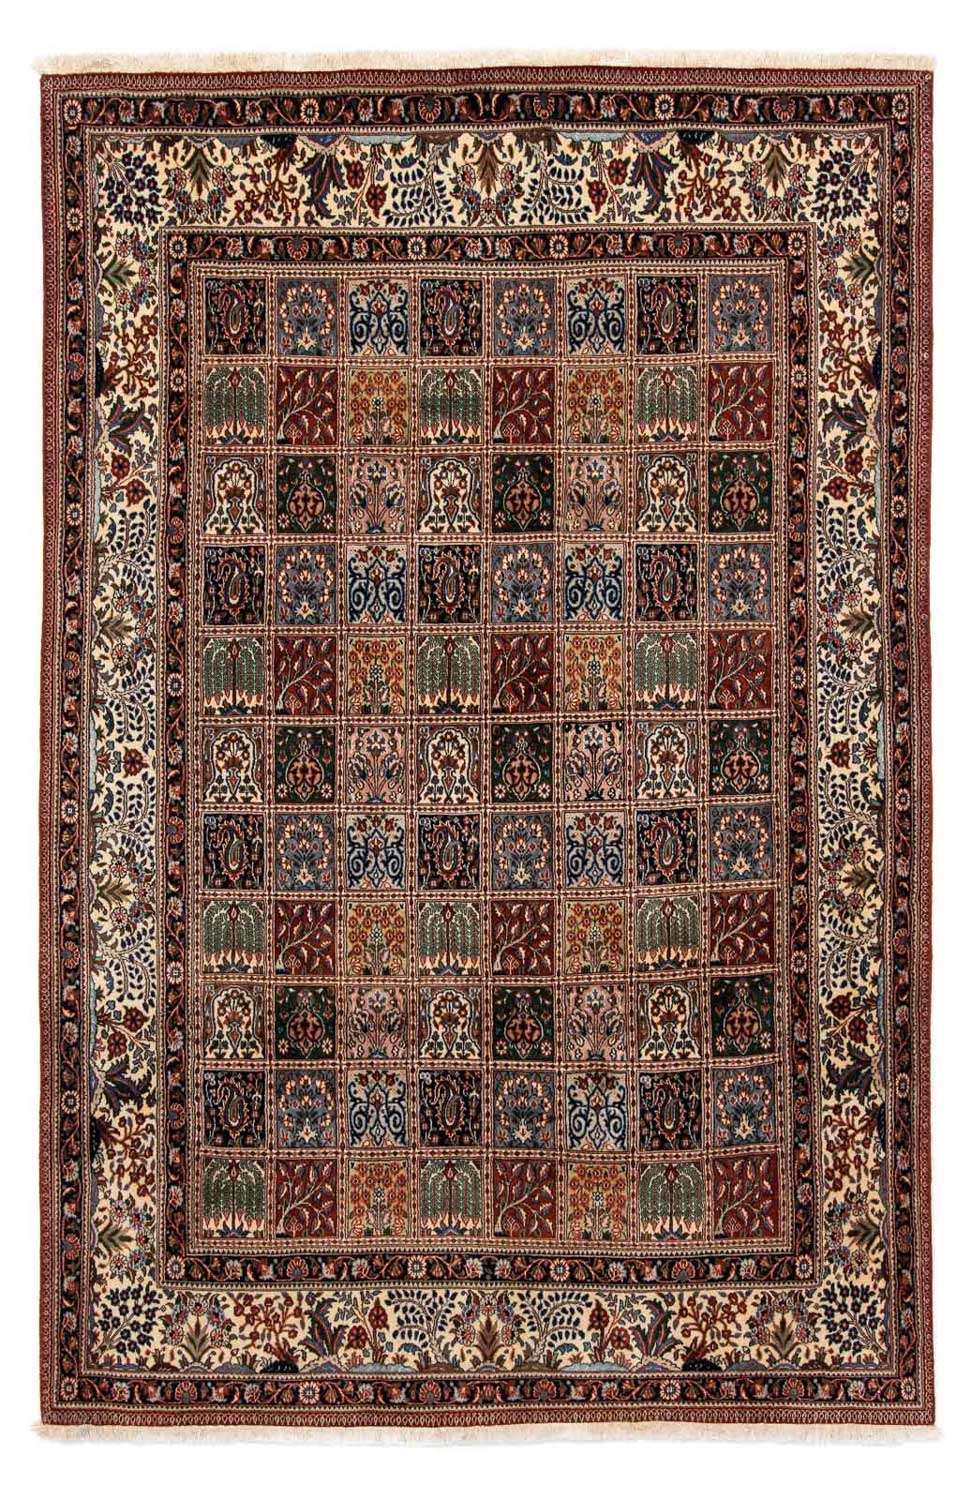 Persisk teppe - klassisk - 291 x 197 cm - flerfarget